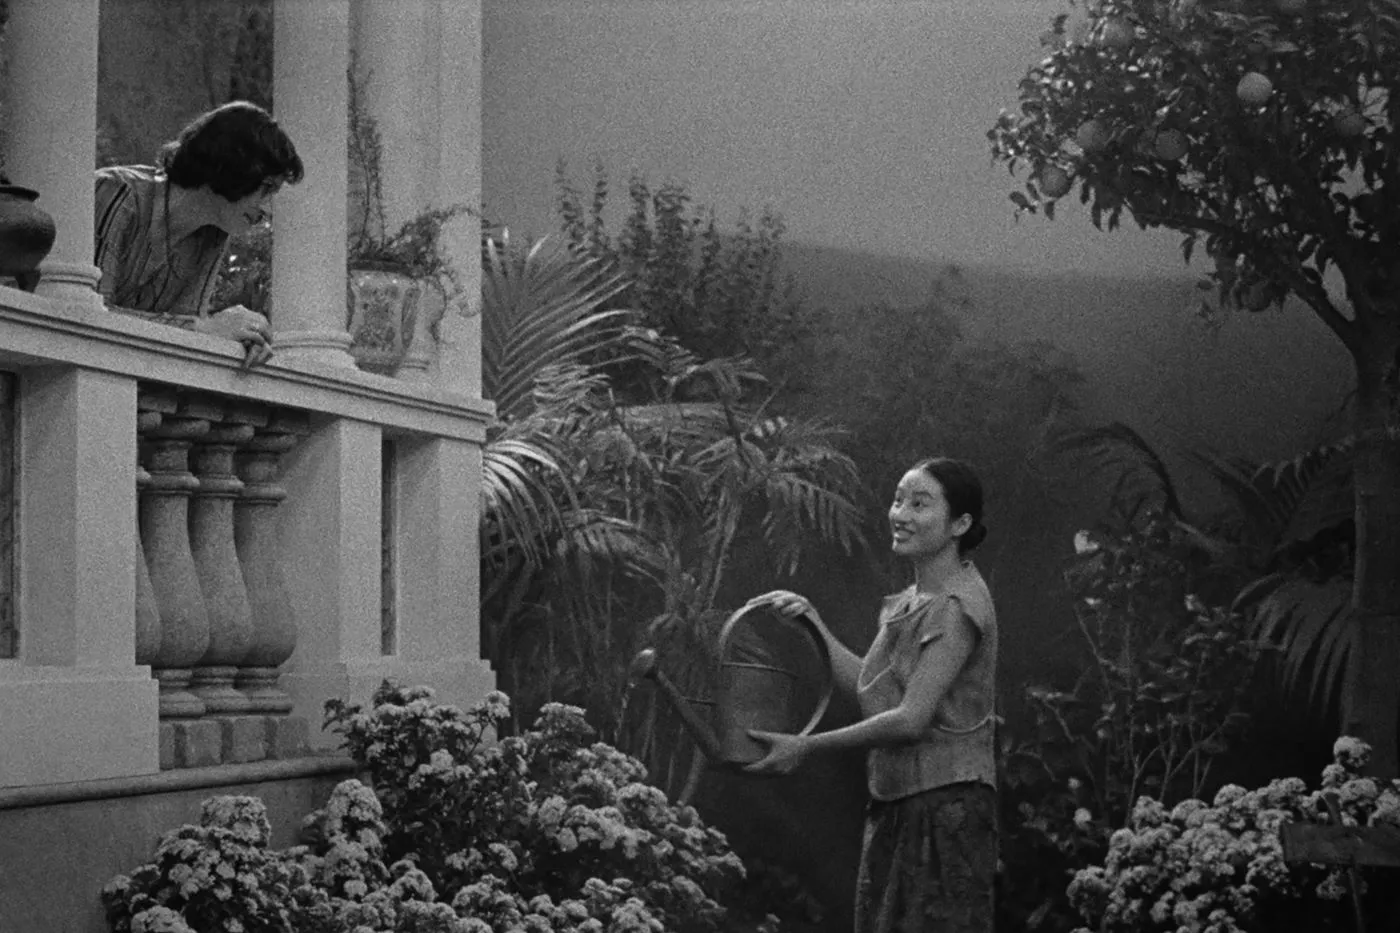 schwarzweiß Aufnahme eines kleinen Gartens, in dem eine junge Frau die Pflanzen gießt, während sie zu einem Balkon aus weißem Stein am rechten Bildrand aufsieht, von dem eine weitere Frau blickt